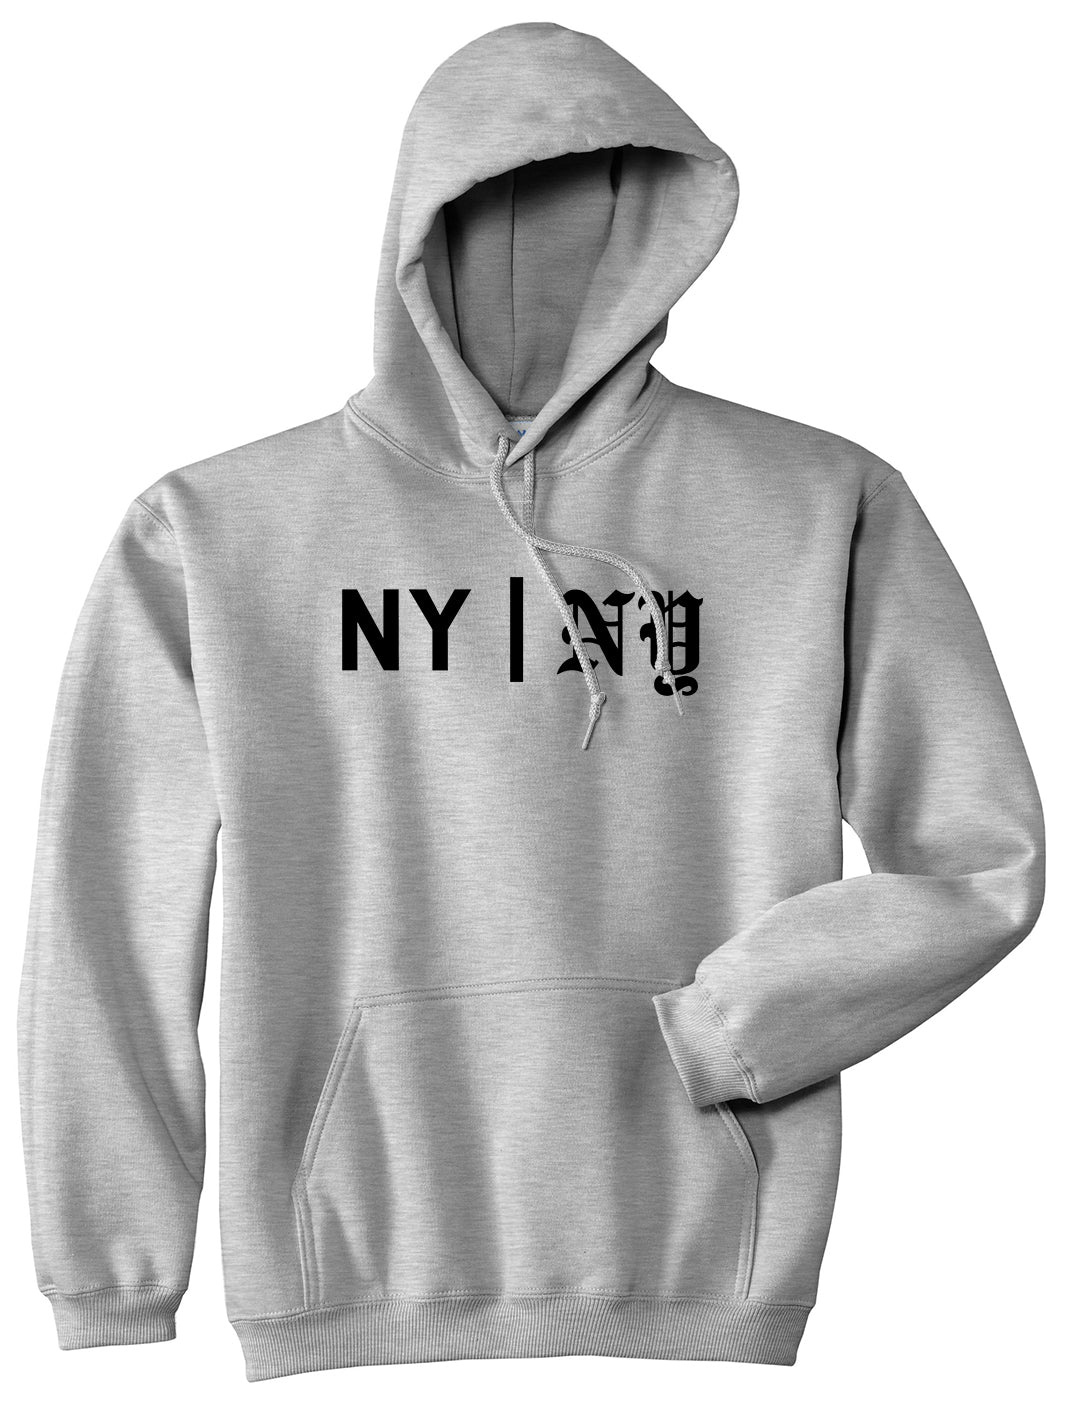 NY vs NY Mens Pullover Hoodie Grey